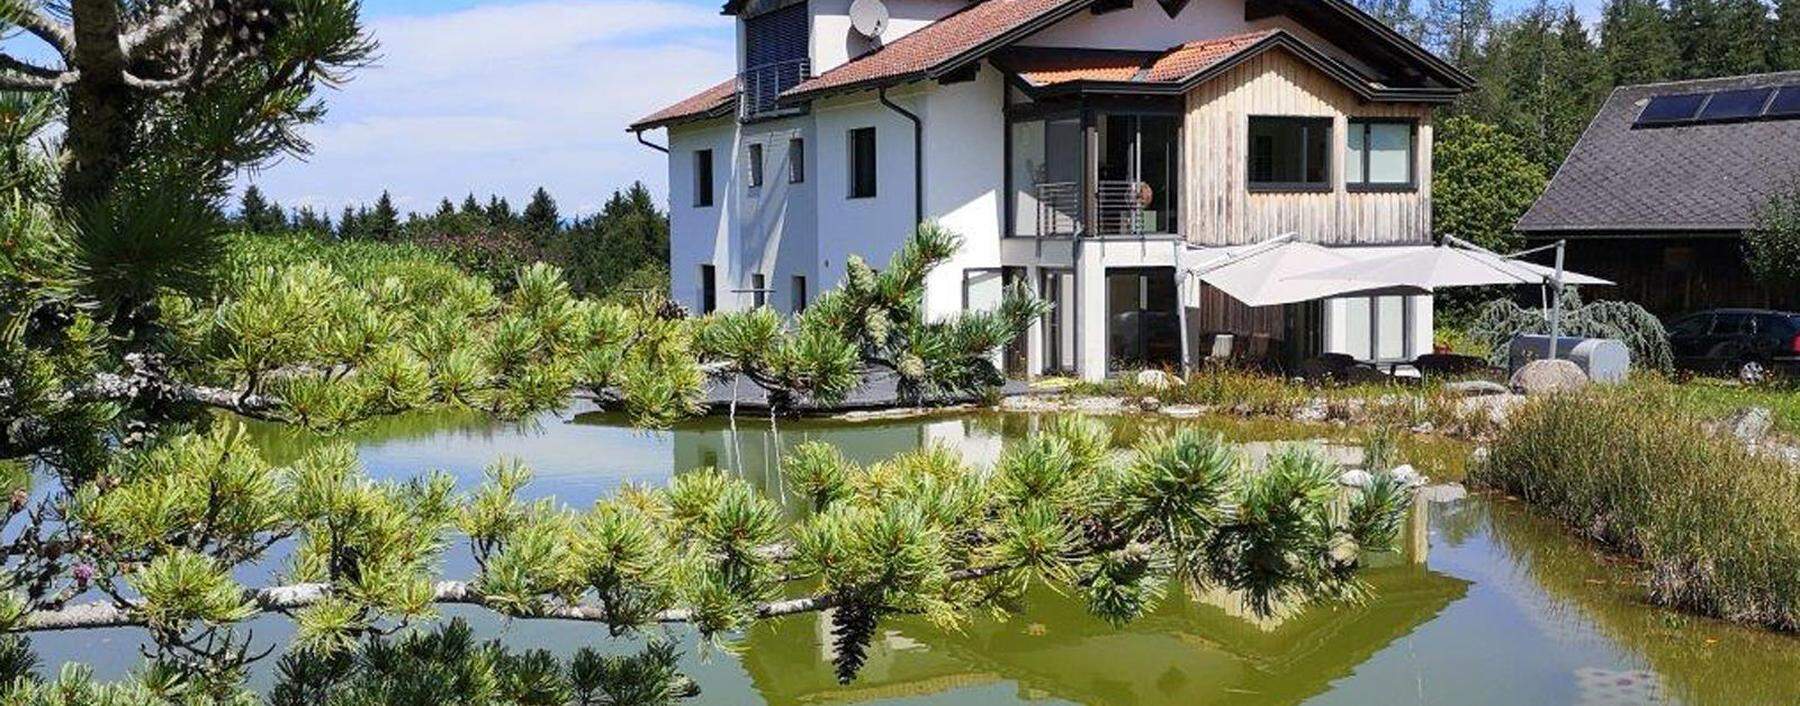 „Neues“ Haus auf alten Mauern mit 1999 angelegtem Teich: Das Domizil der Malerin Elisabeth Nagy südlich von Klagenfurt.